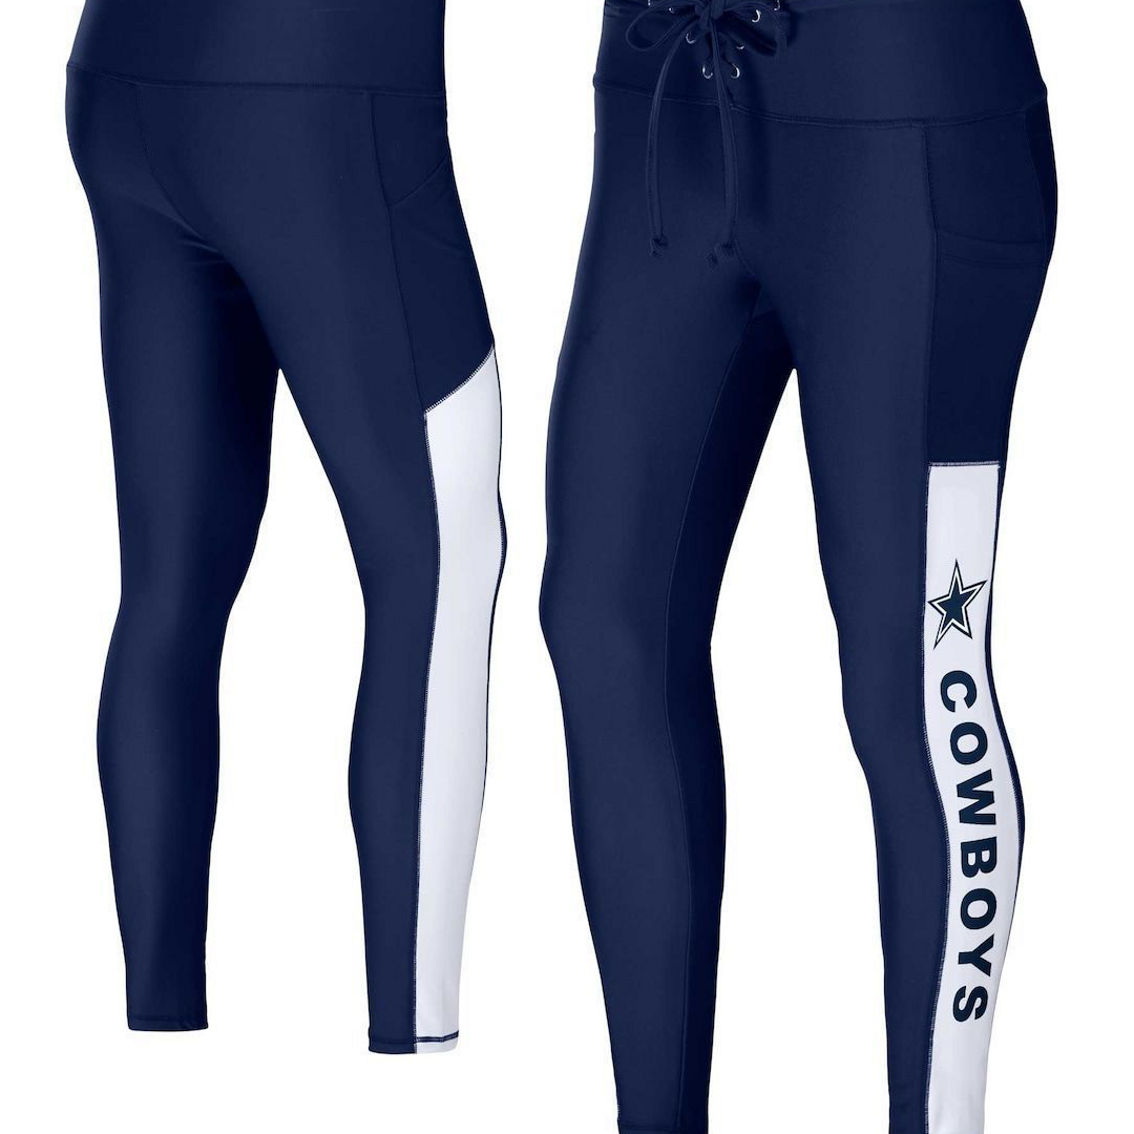 Wear By Erin Andrews Women's Navy Dallas Cowboys Leggings, Fan Shop